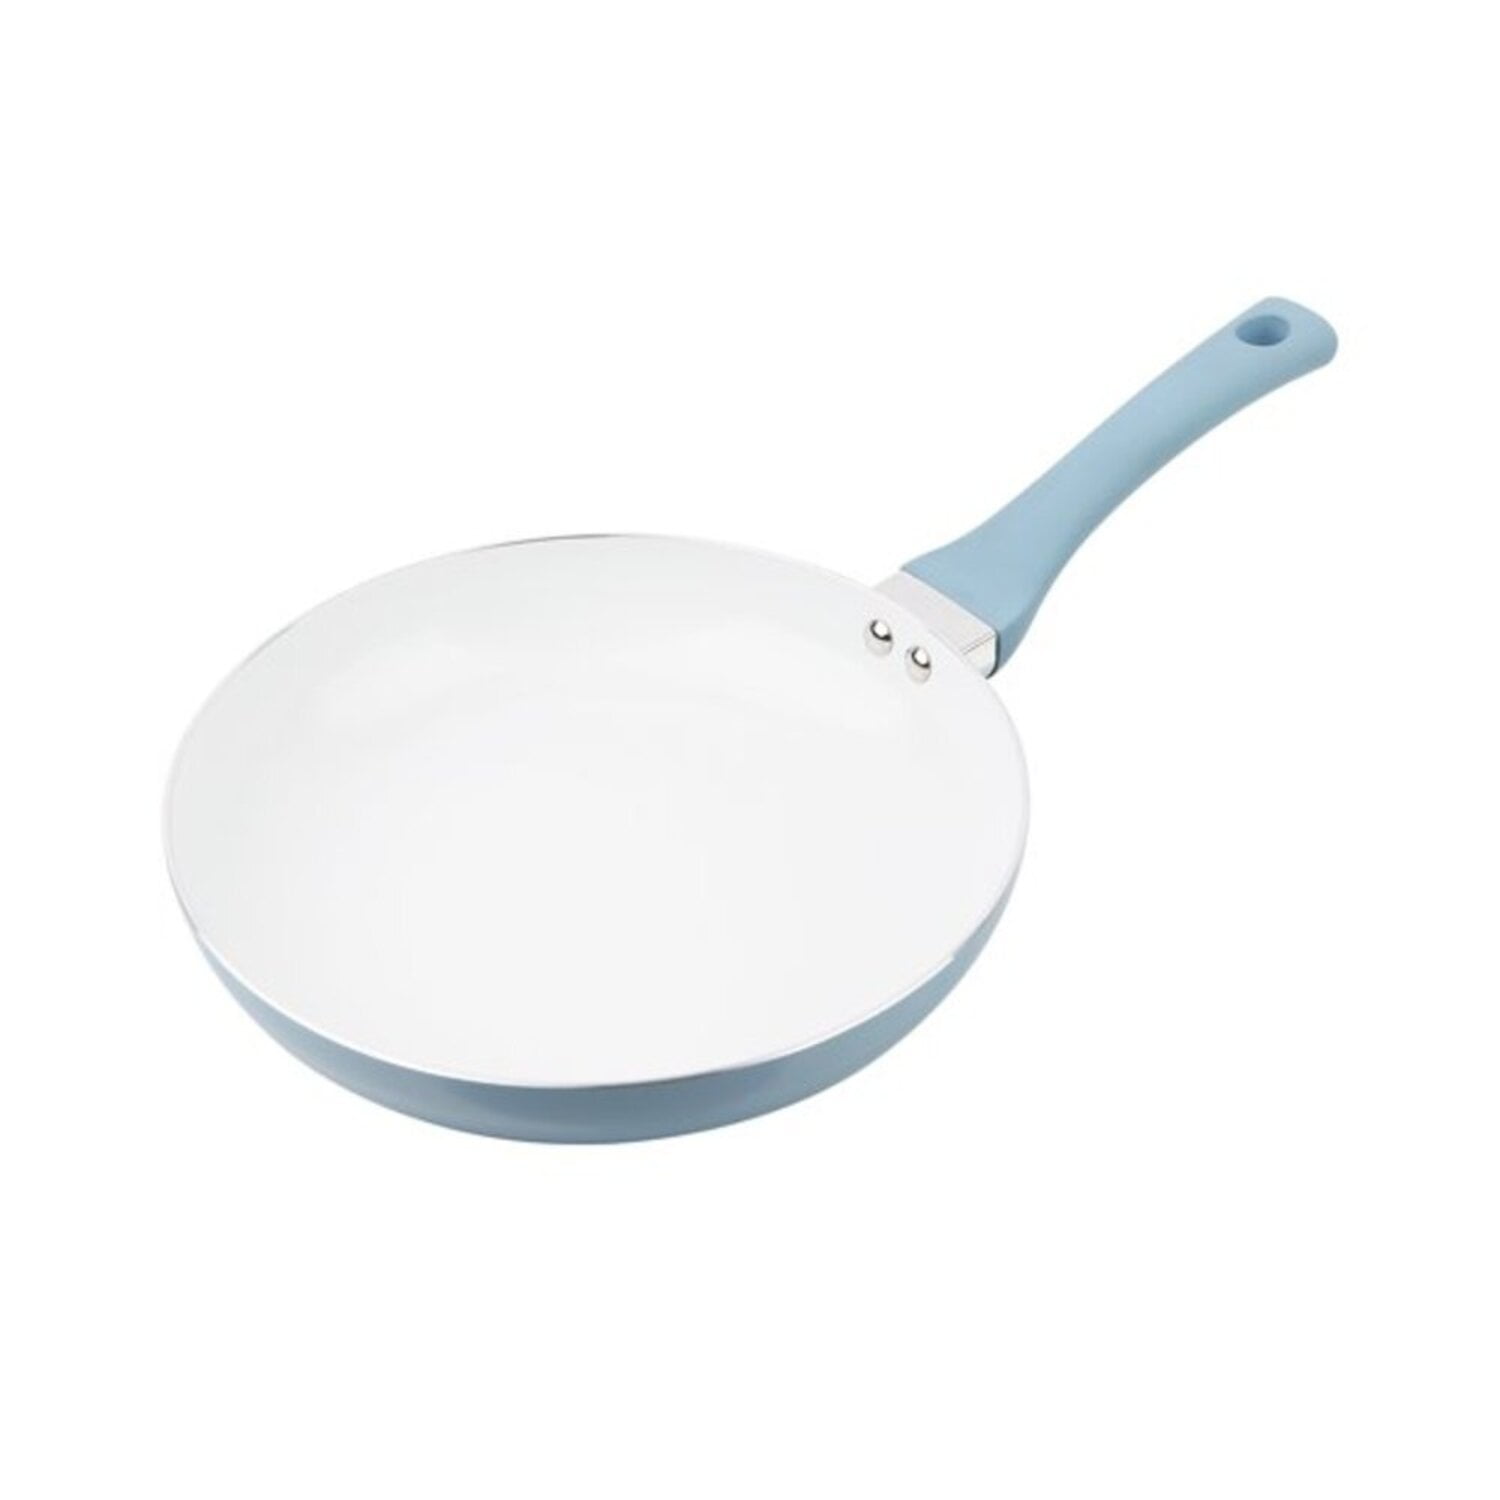 Shell porcelain white pebble pan Non-stick deep frying pan